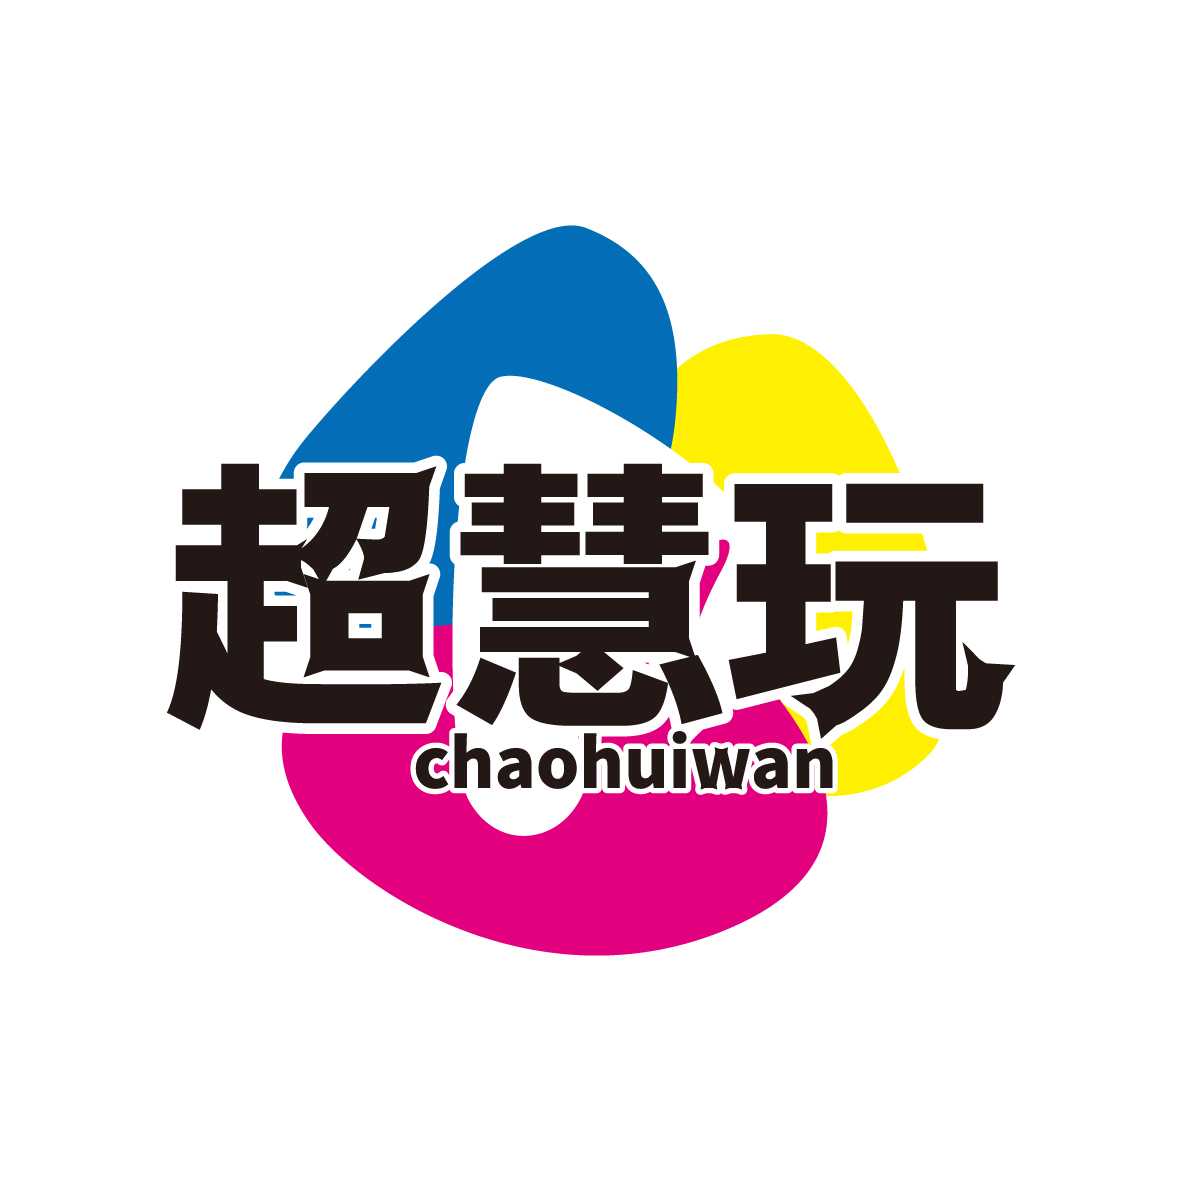 超慧玩 chaohuiwan